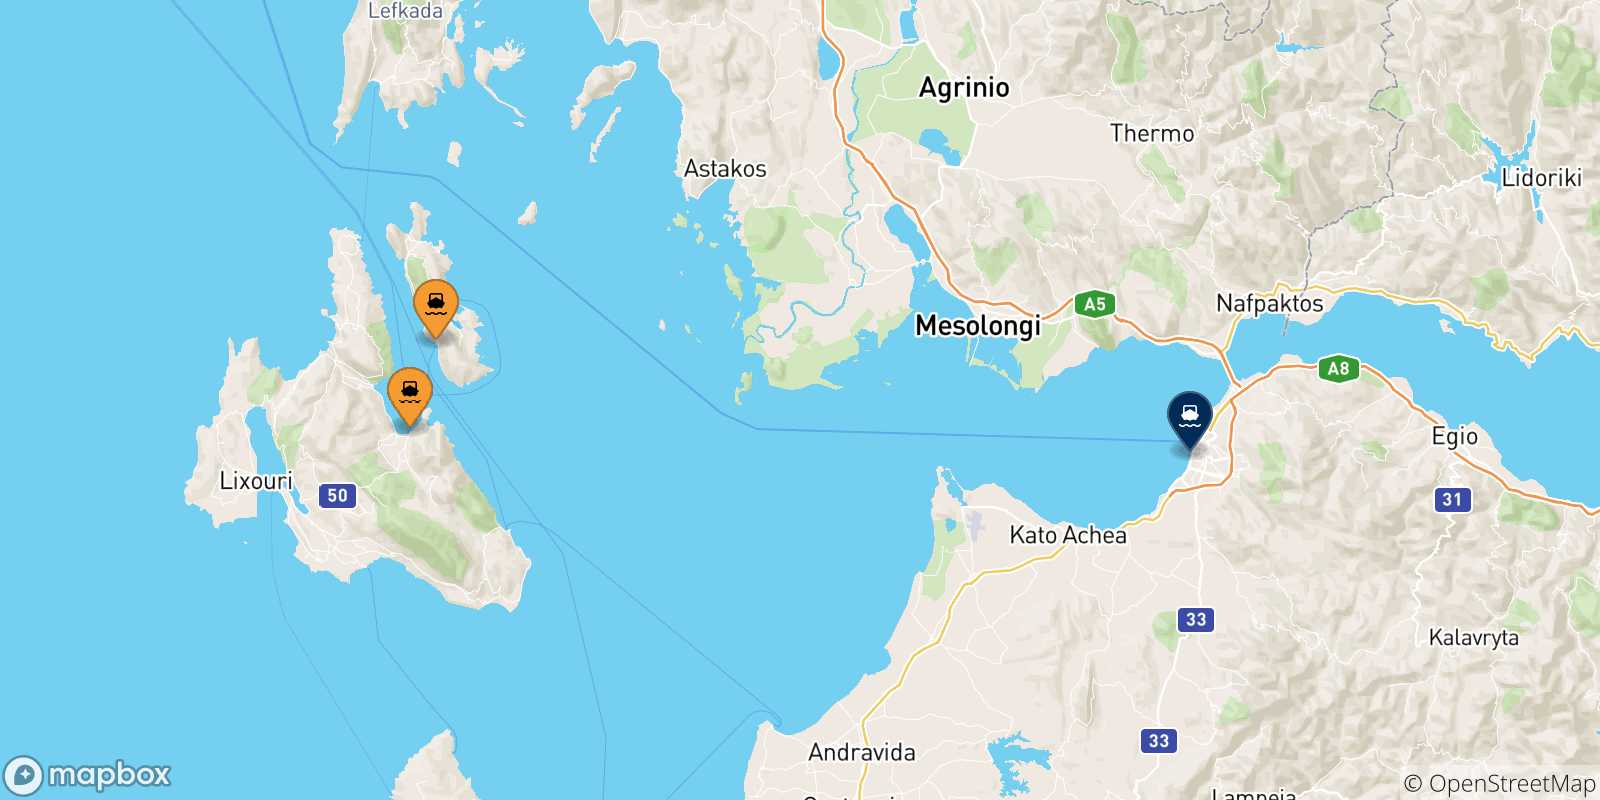 Mappa delle possibili rotte tra le Isole Ionie e Patrasso